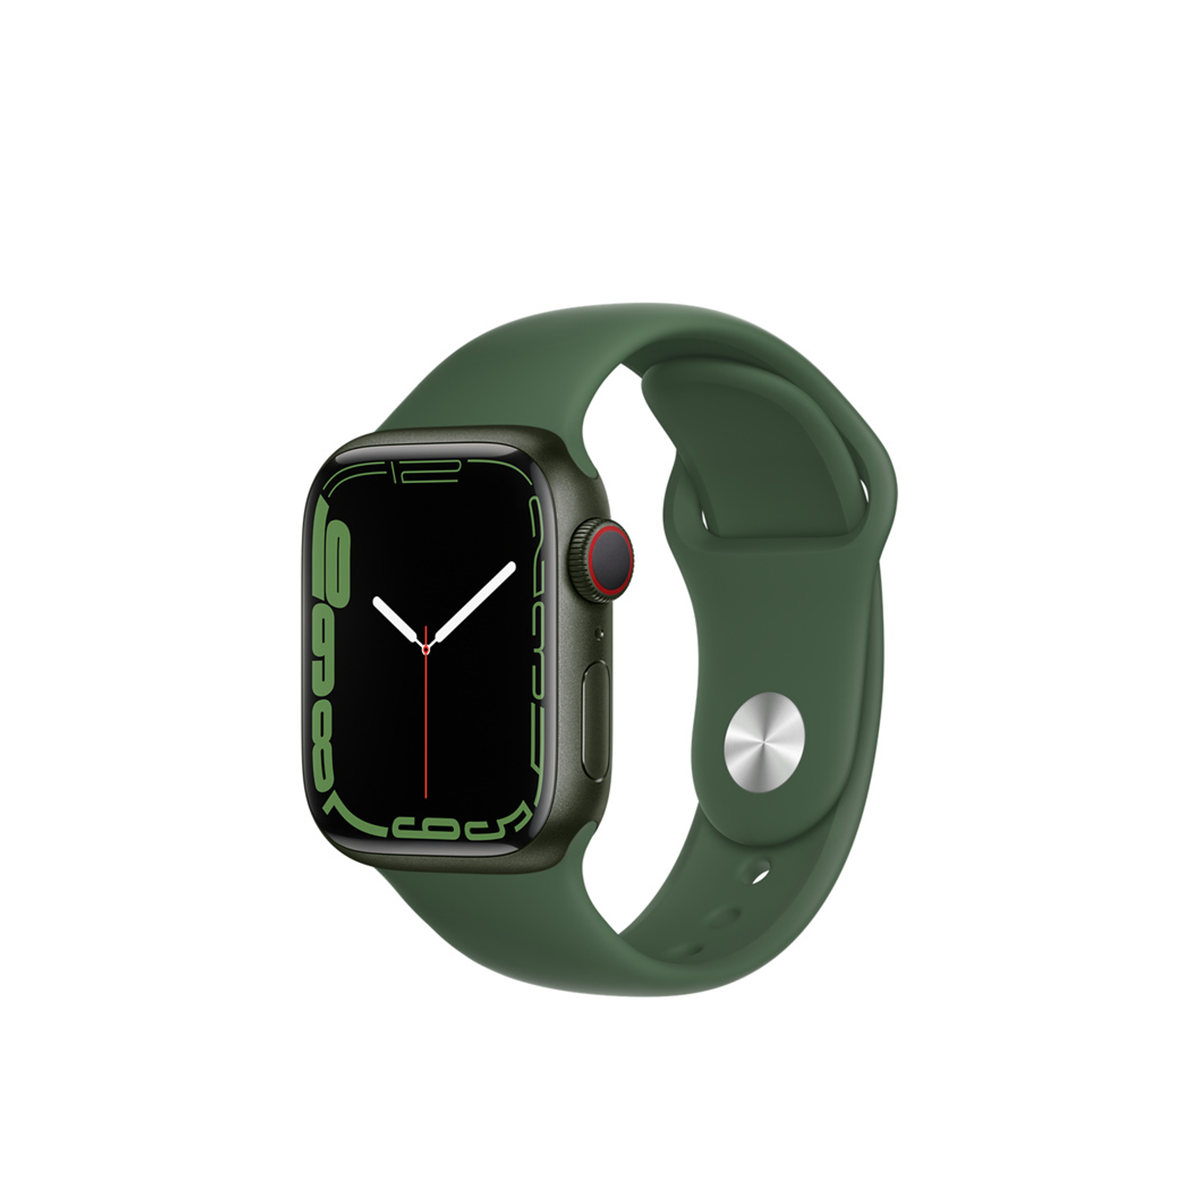  Apple Watch Series 7 GPS + Cellular, Green Aluminium Case with Clover Sport Band - Regular 